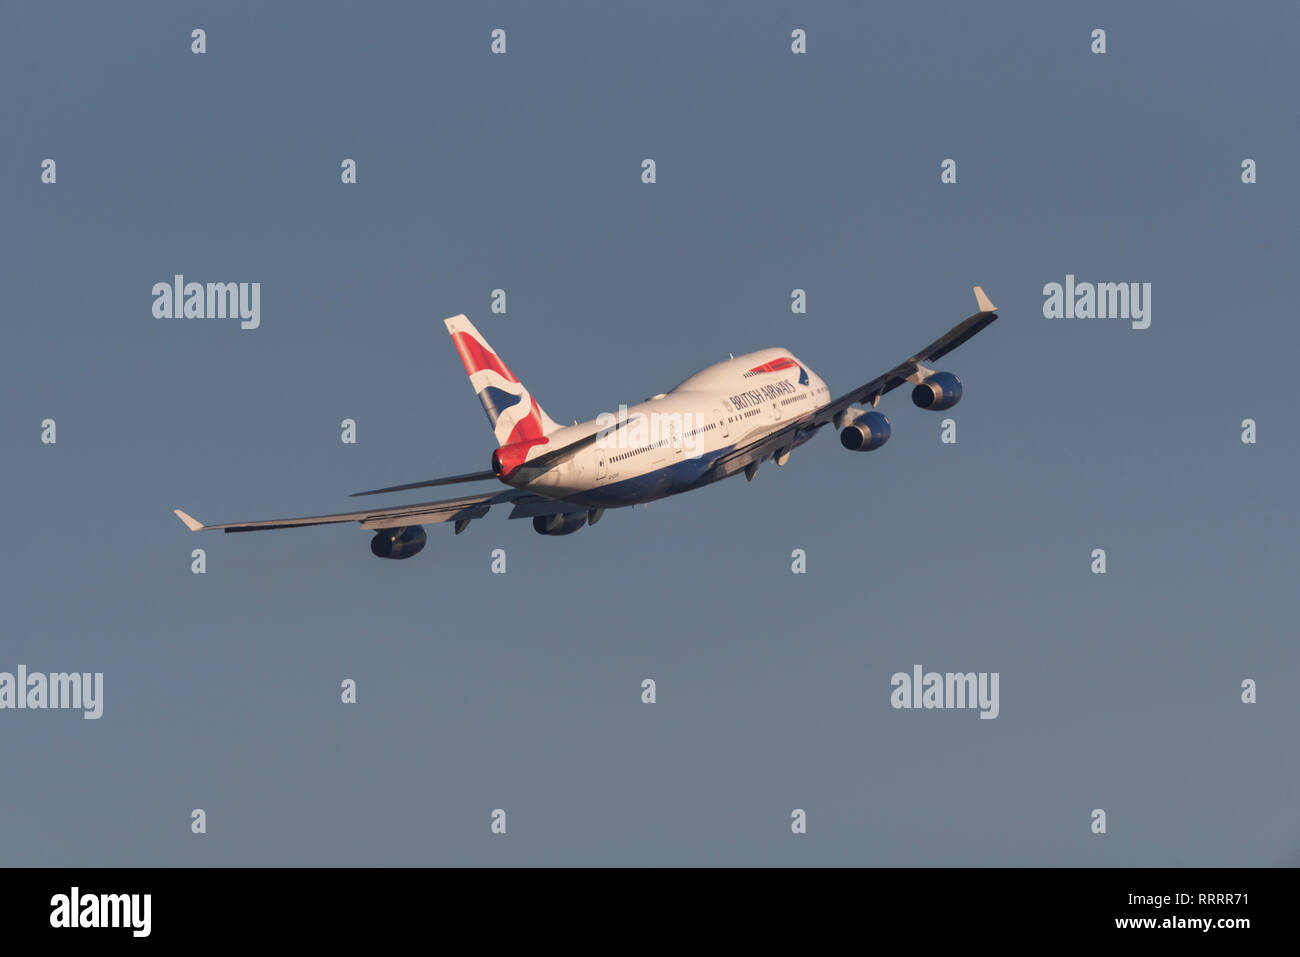 British Airways Boeing 747 Jumbo Jet aereo jet aereo decollo dall'Aeroporto Heathrow di Londra, Regno Unito. Compagnia aerea della partenza del volo. 747-400 arrampicata lontano Foto Stock